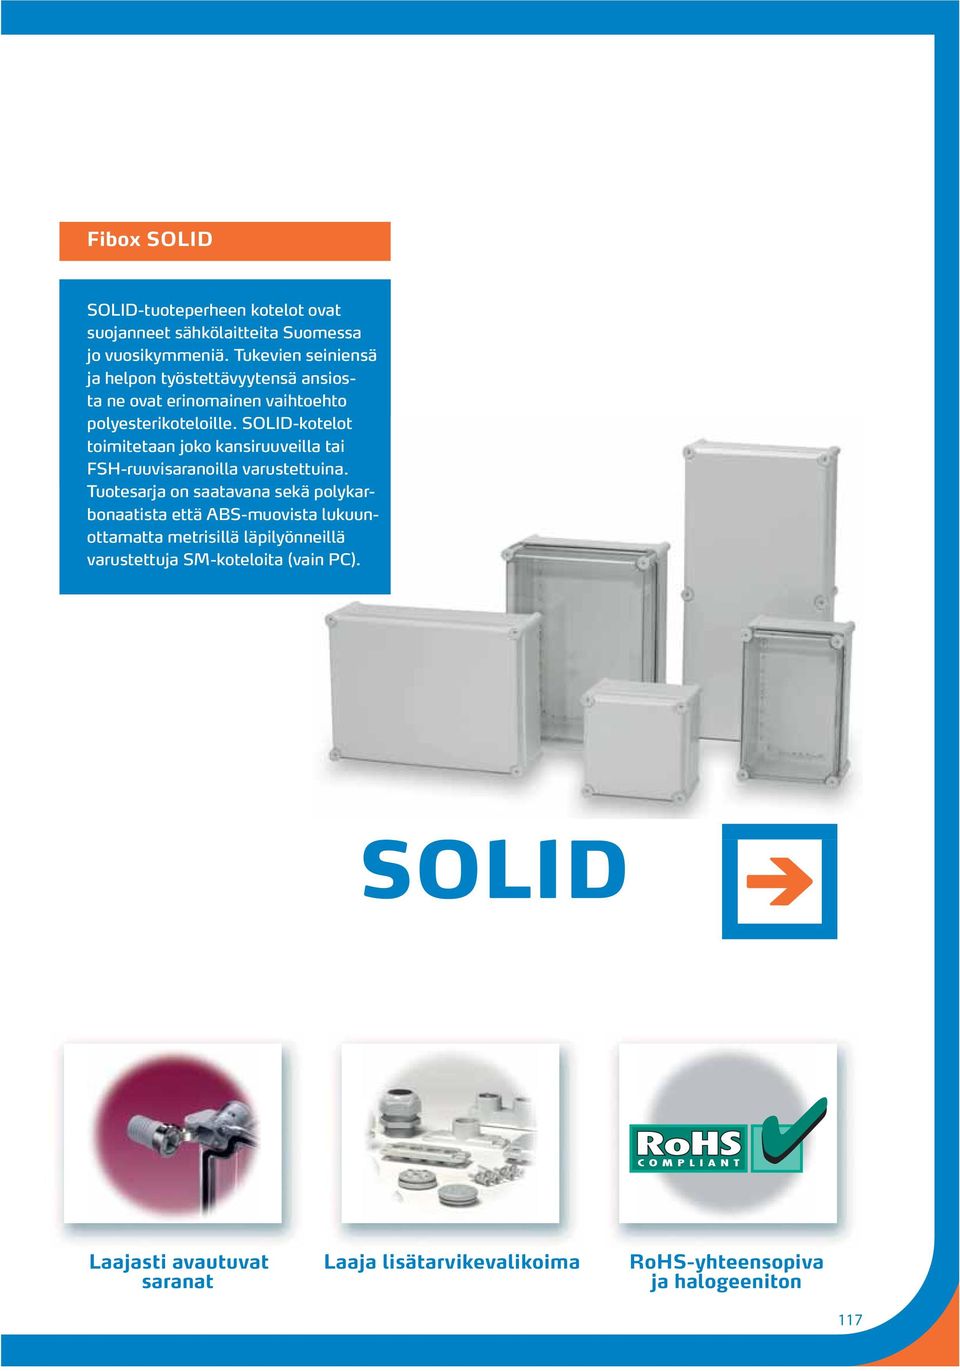 SOLID-kotelot toimitetaan joko kansiruuveilla tai FSH-ruuvisaranoilla varustettuina.